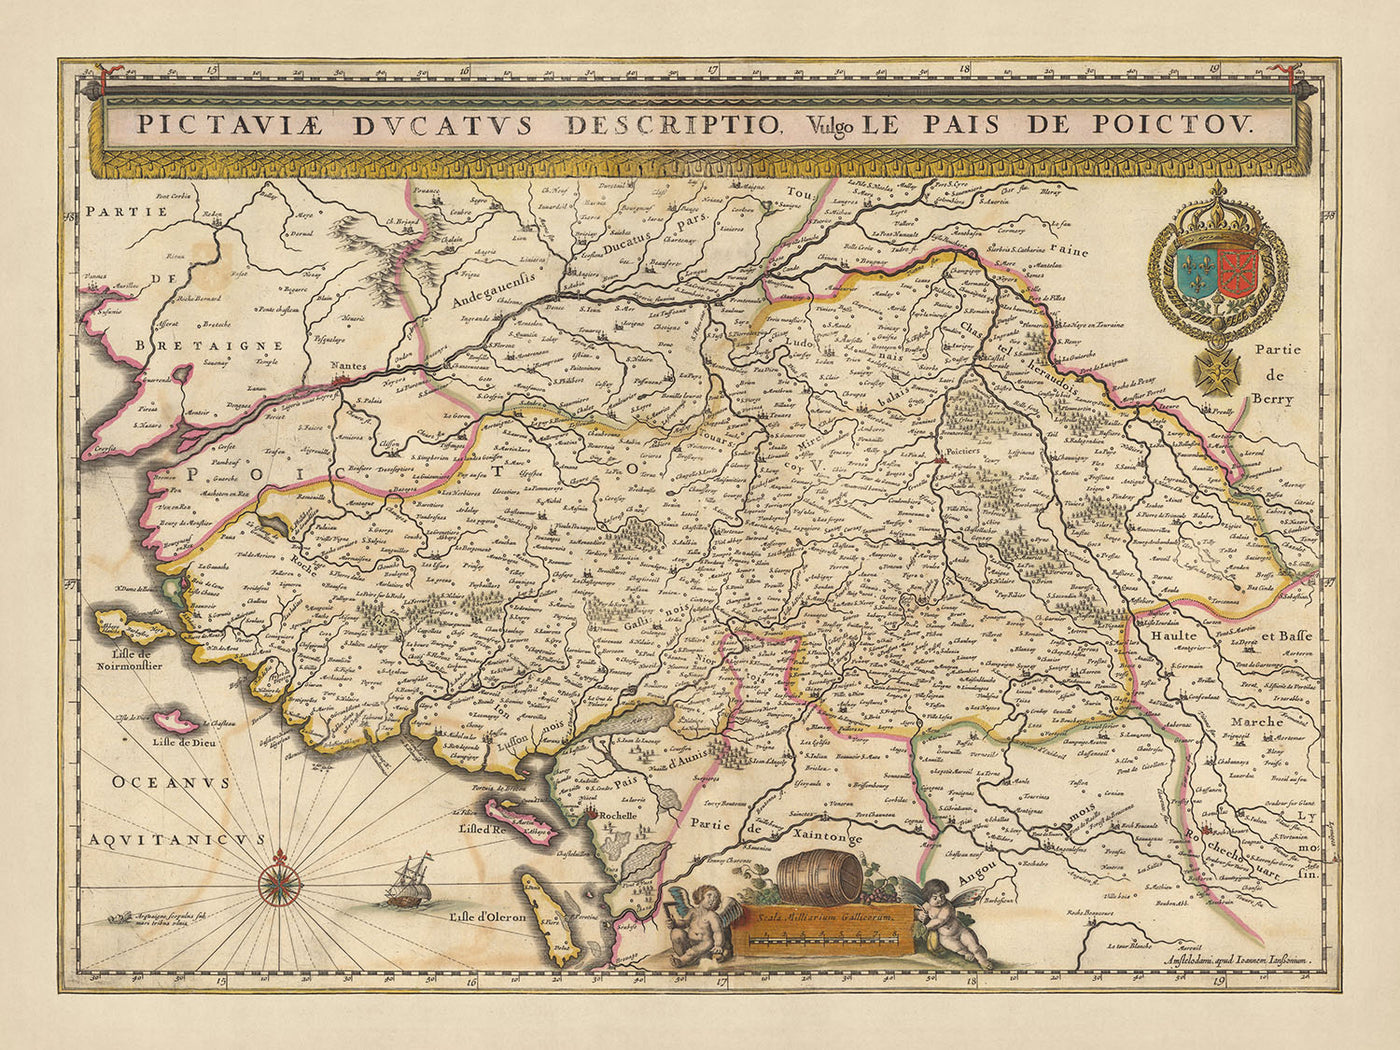 Alte Karte des Herzogtums Poitou von Visscher, 1690: Nantes, Angers, Poitiers, La Rochelle, Regionaler Naturpark Marais Poitevin